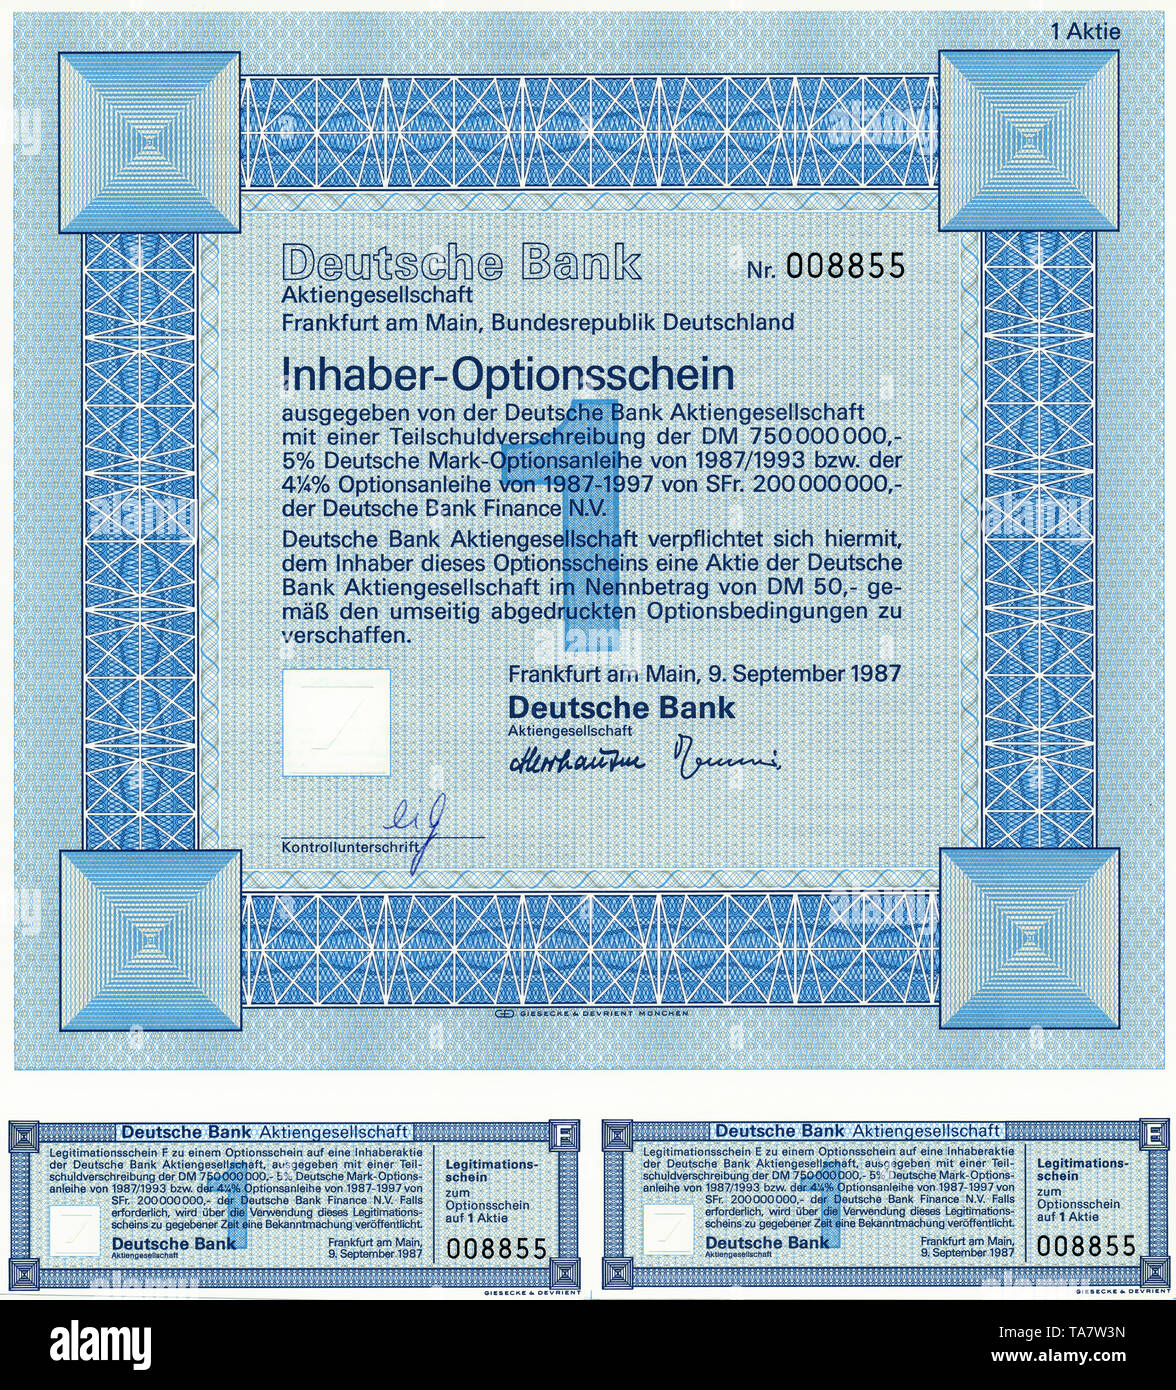 Historic Stock certificato, certificato di titoli al portatore, warrant, Germania, Inhaber-Optionsschein für Aktien von der Deutschen Bank AG, Frankfurt a.M., Deutschland, 1987 Foto Stock